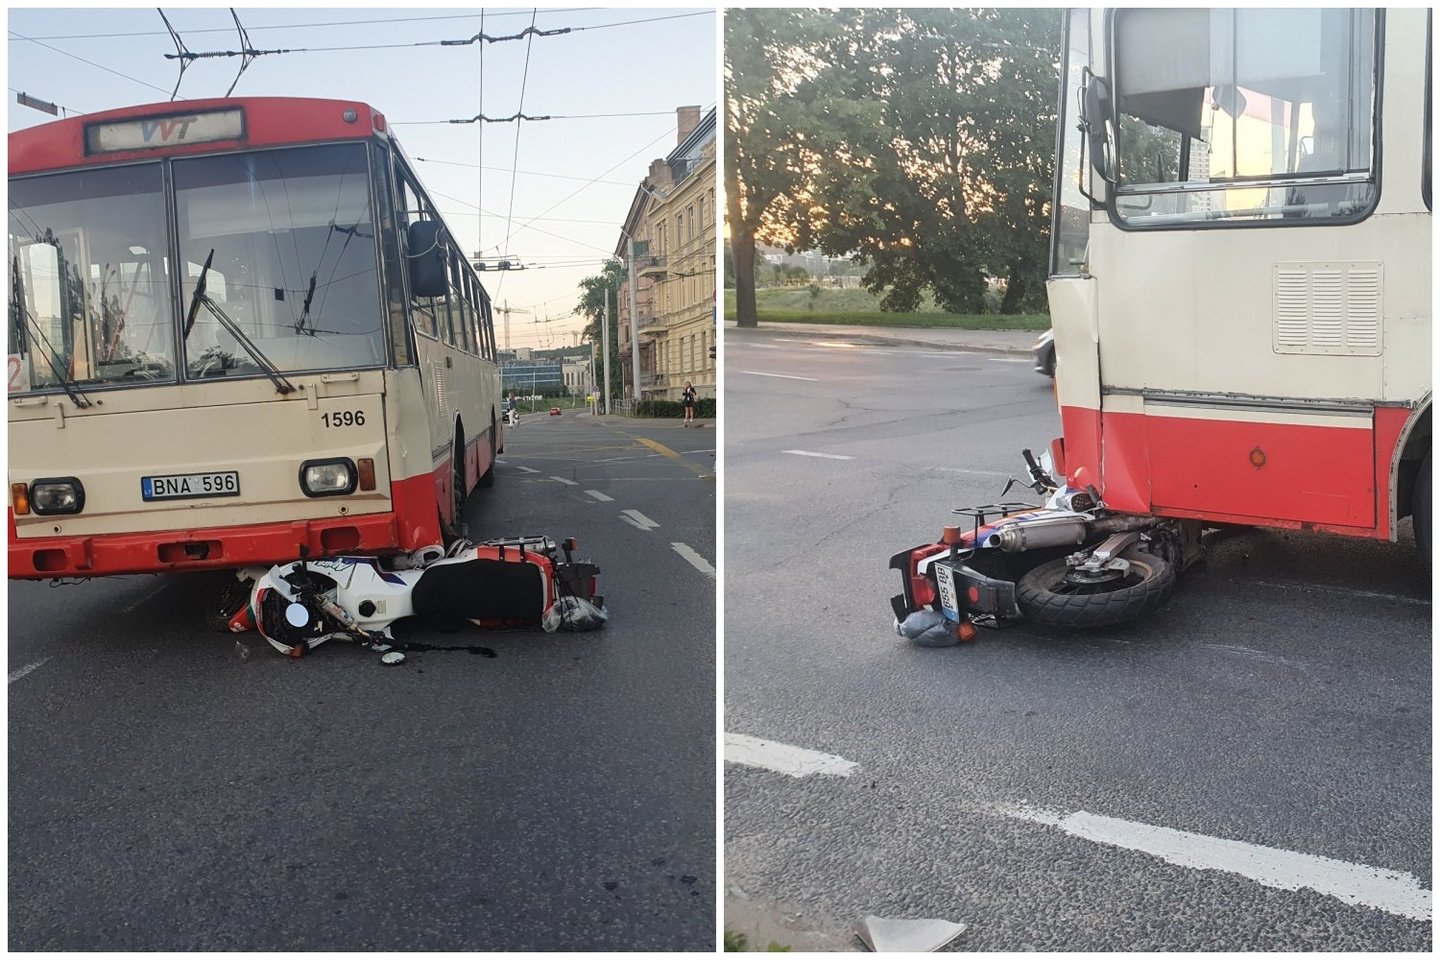  Avarija Vilniaus centre: motociklas atsidūrė po troleibusu, yra nukentėjusių.<br> Įvykio liudininko nuotr.